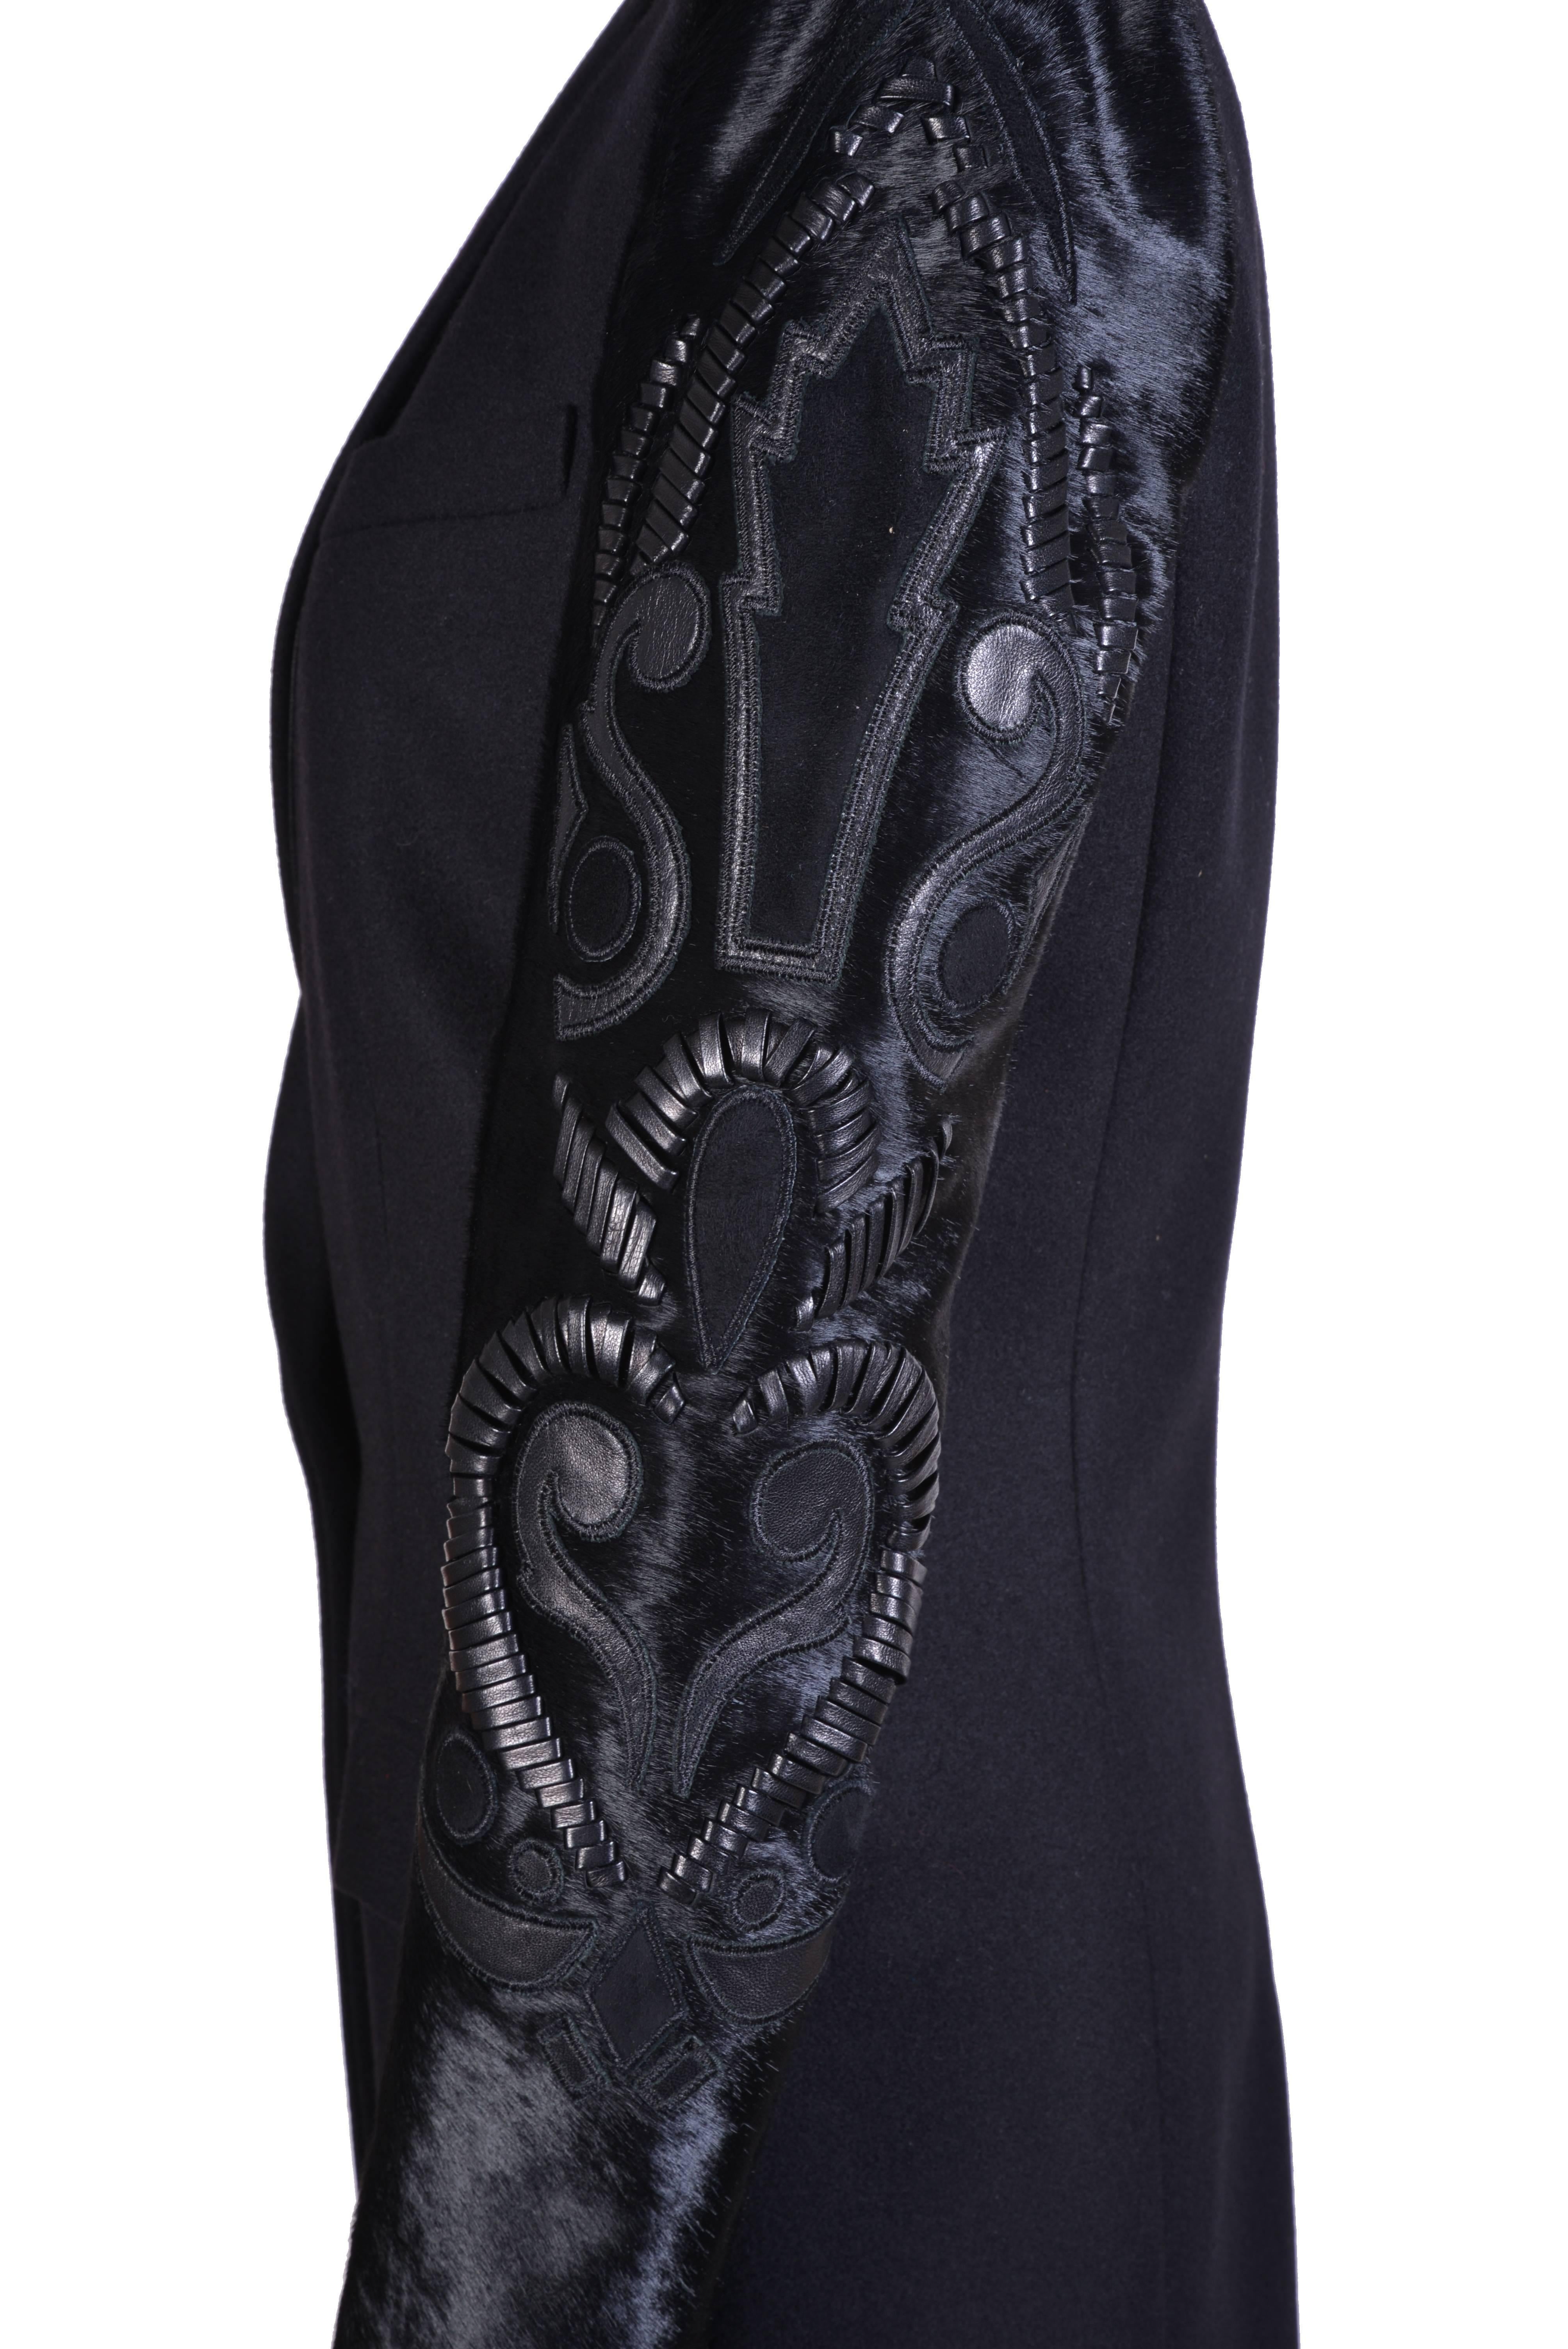 Versace Schwarzer Mantel mit verschönerten Ärmeln

90% Wolle, 10% Kaschmir

100% Leder

100% Seide

Größe 38

Brandneu

